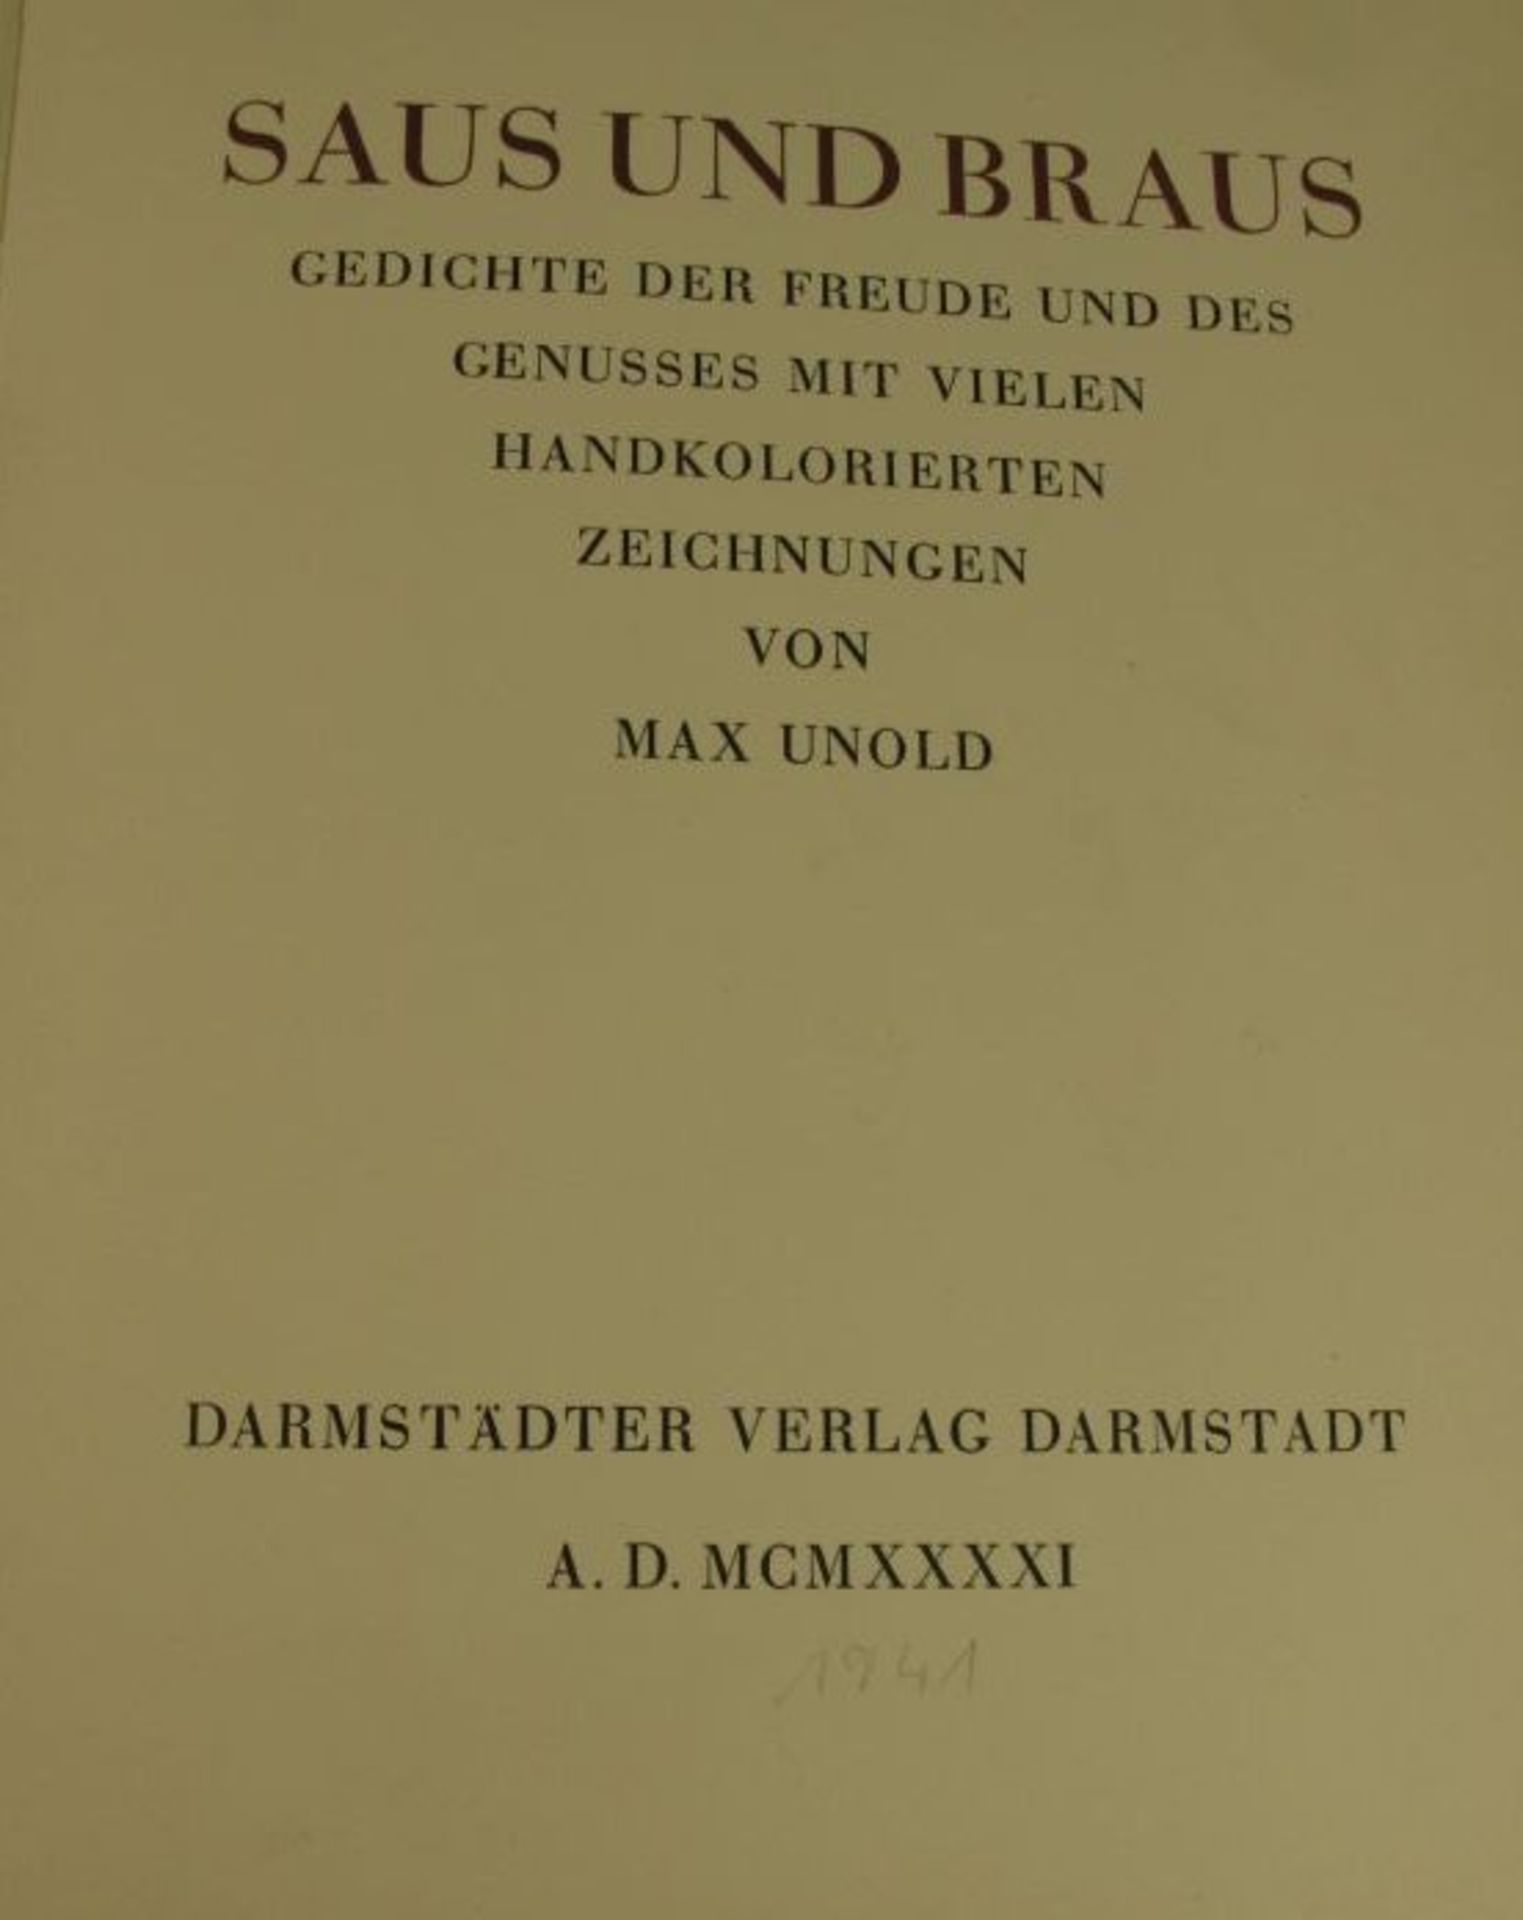 Saus und Braus, Gedichte der Freude und des Genusses, mit zahlr. handkolorierten Zeichn. v. Max - Bild 2 aus 3